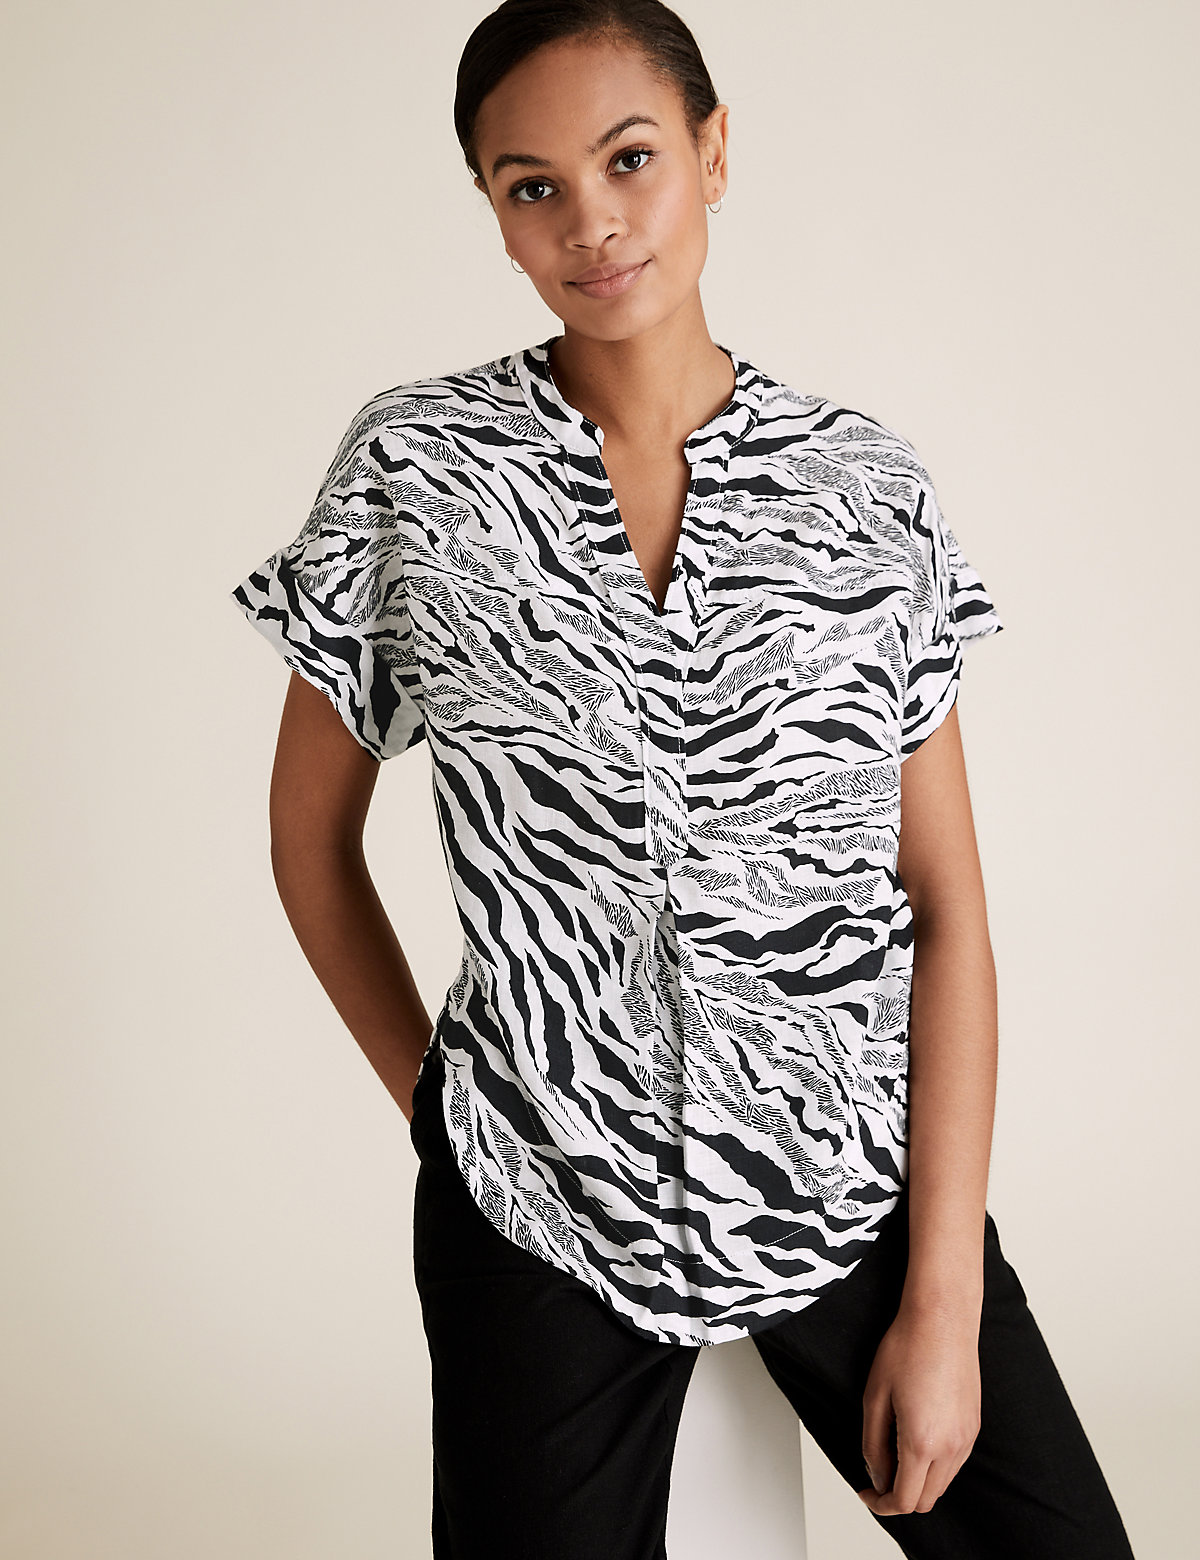 Блуза Marks & Spencer Блузка с короткими рукавами из чистого льна с принтом зебры, Marks&Spencer